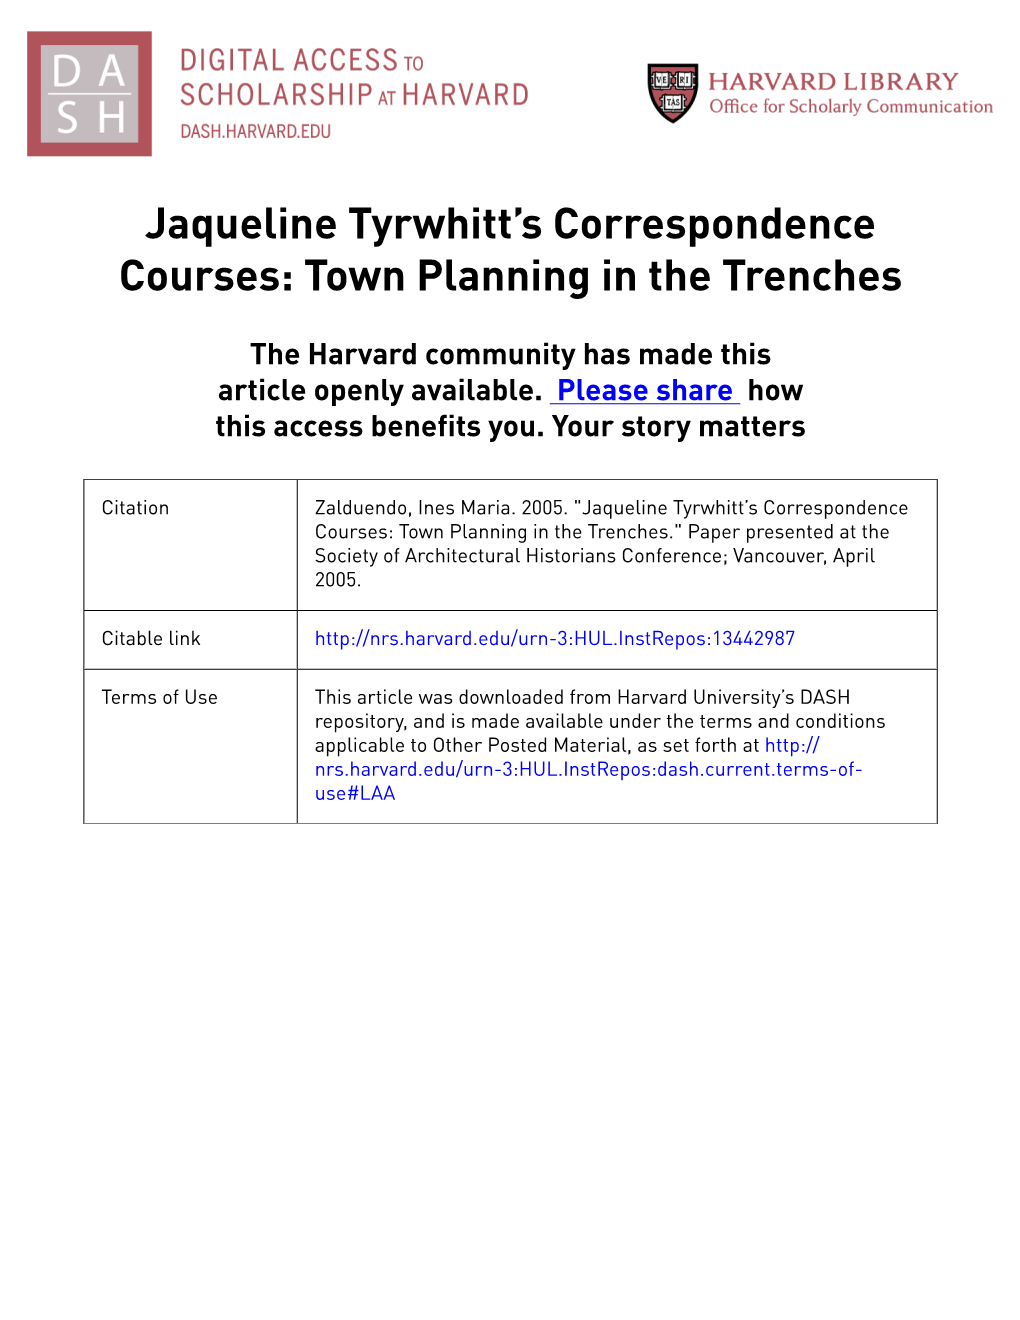 Jaqueline Tyrwhitt's Correspondence Courses